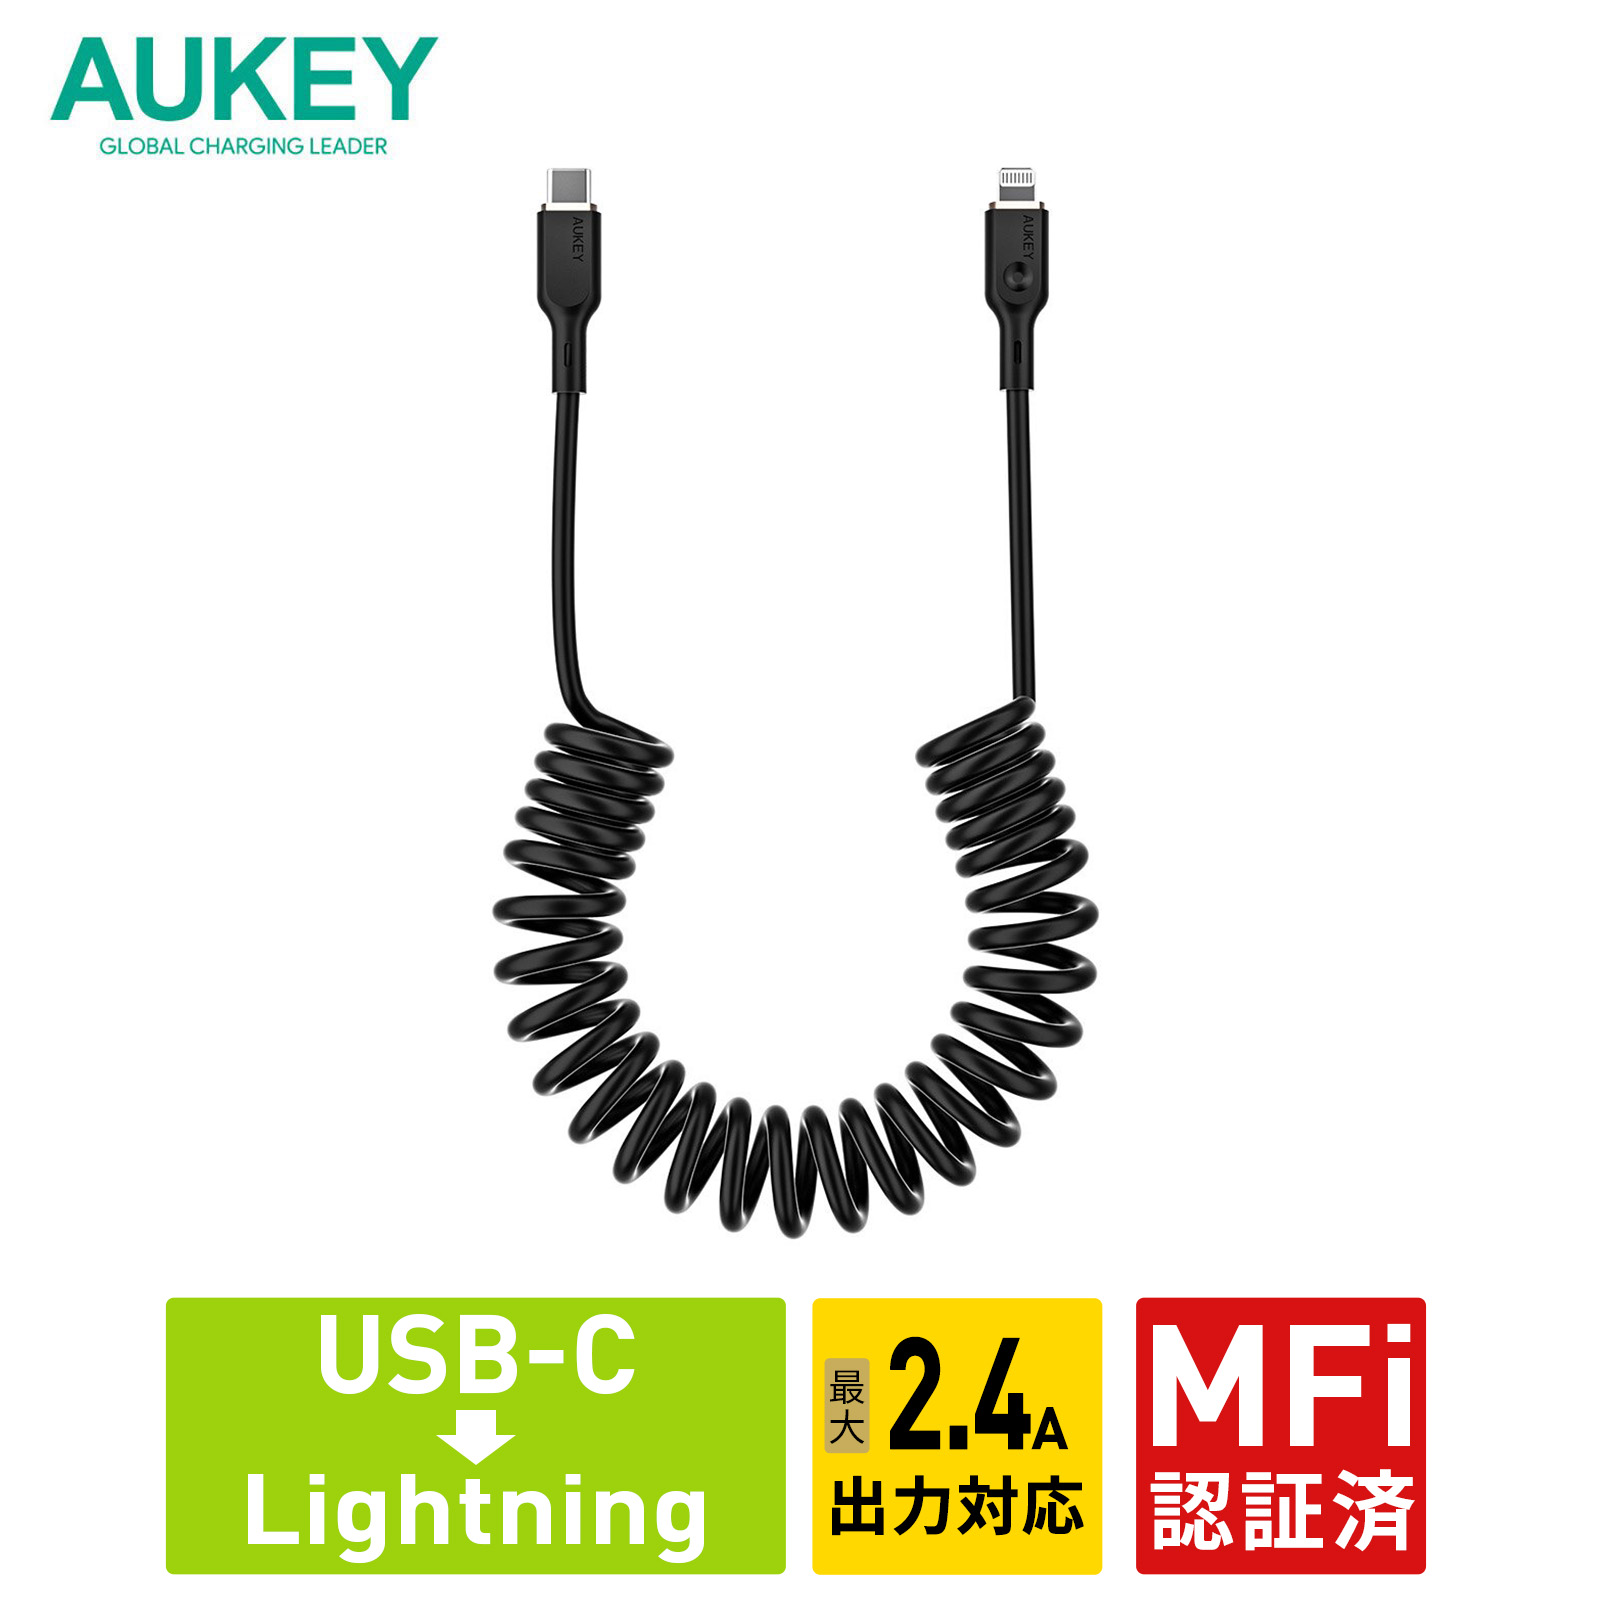 USB Type-C to Lightning ケーブル C-L 1.5m 急速充電 コイル型 データ転送 480Mbps MFi認証 ブラック 2年保証 AUKEY オーキー Coiled Series CB-CL19